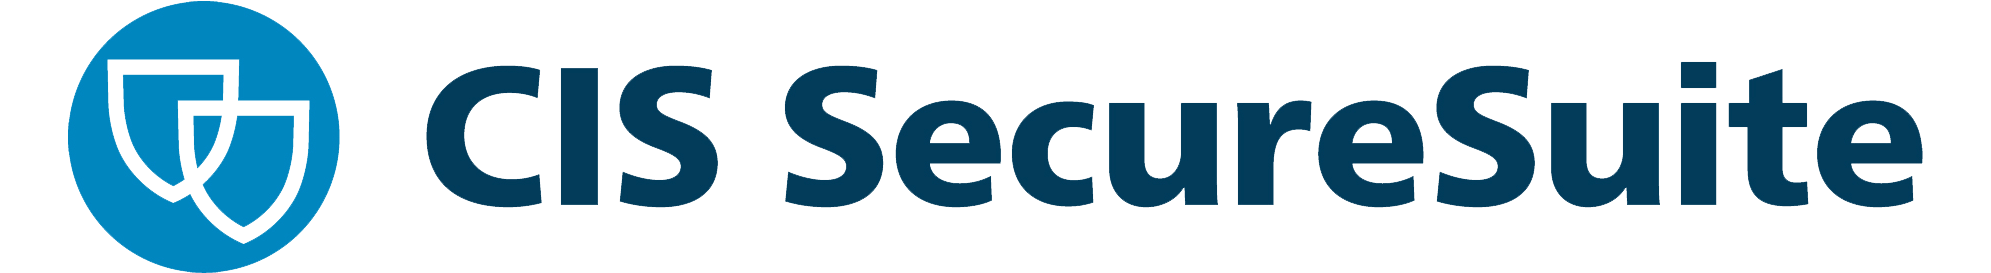 CIS secure suite logo